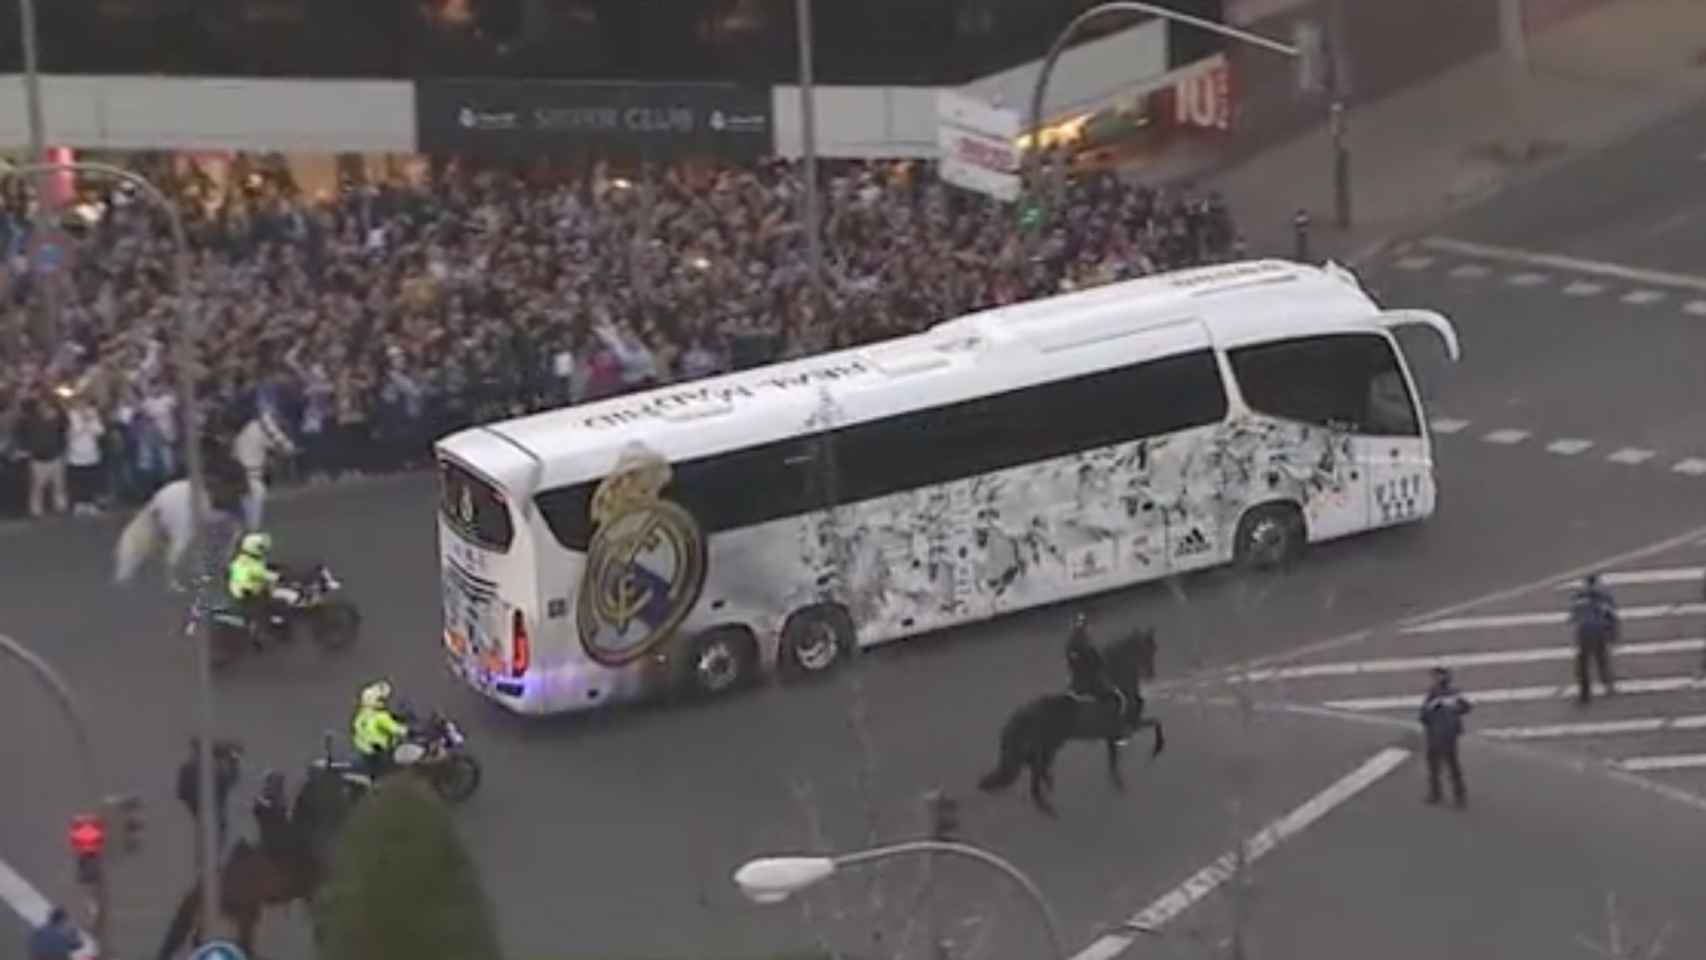 Recibimiento al autobús del Real Madrid antes del Clásico